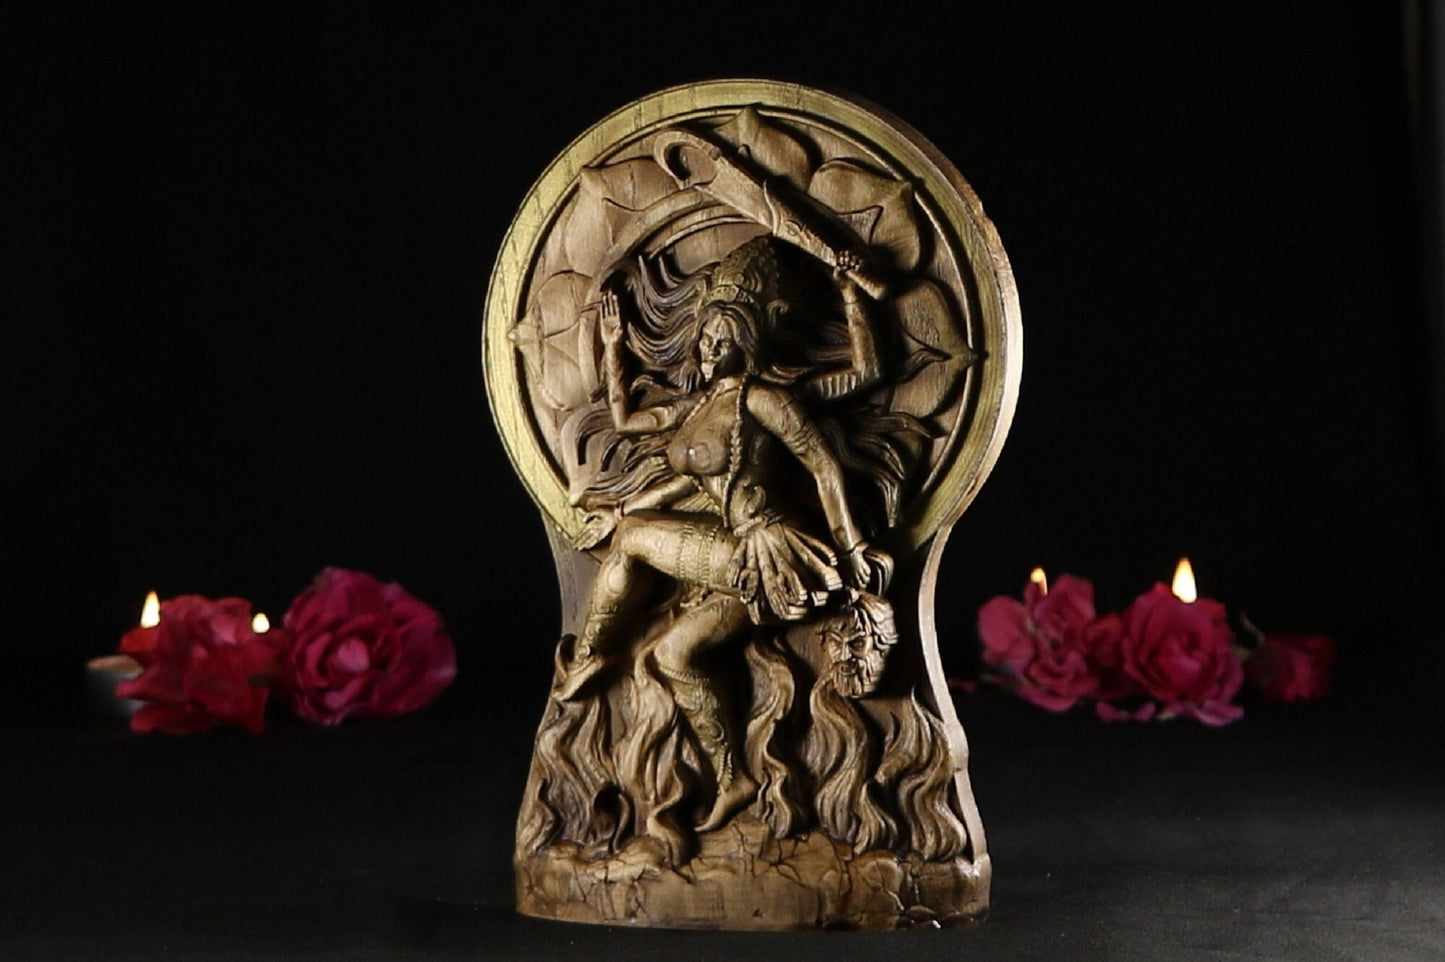 Wooden Kali Shiva Sculpture - Hindu Statue